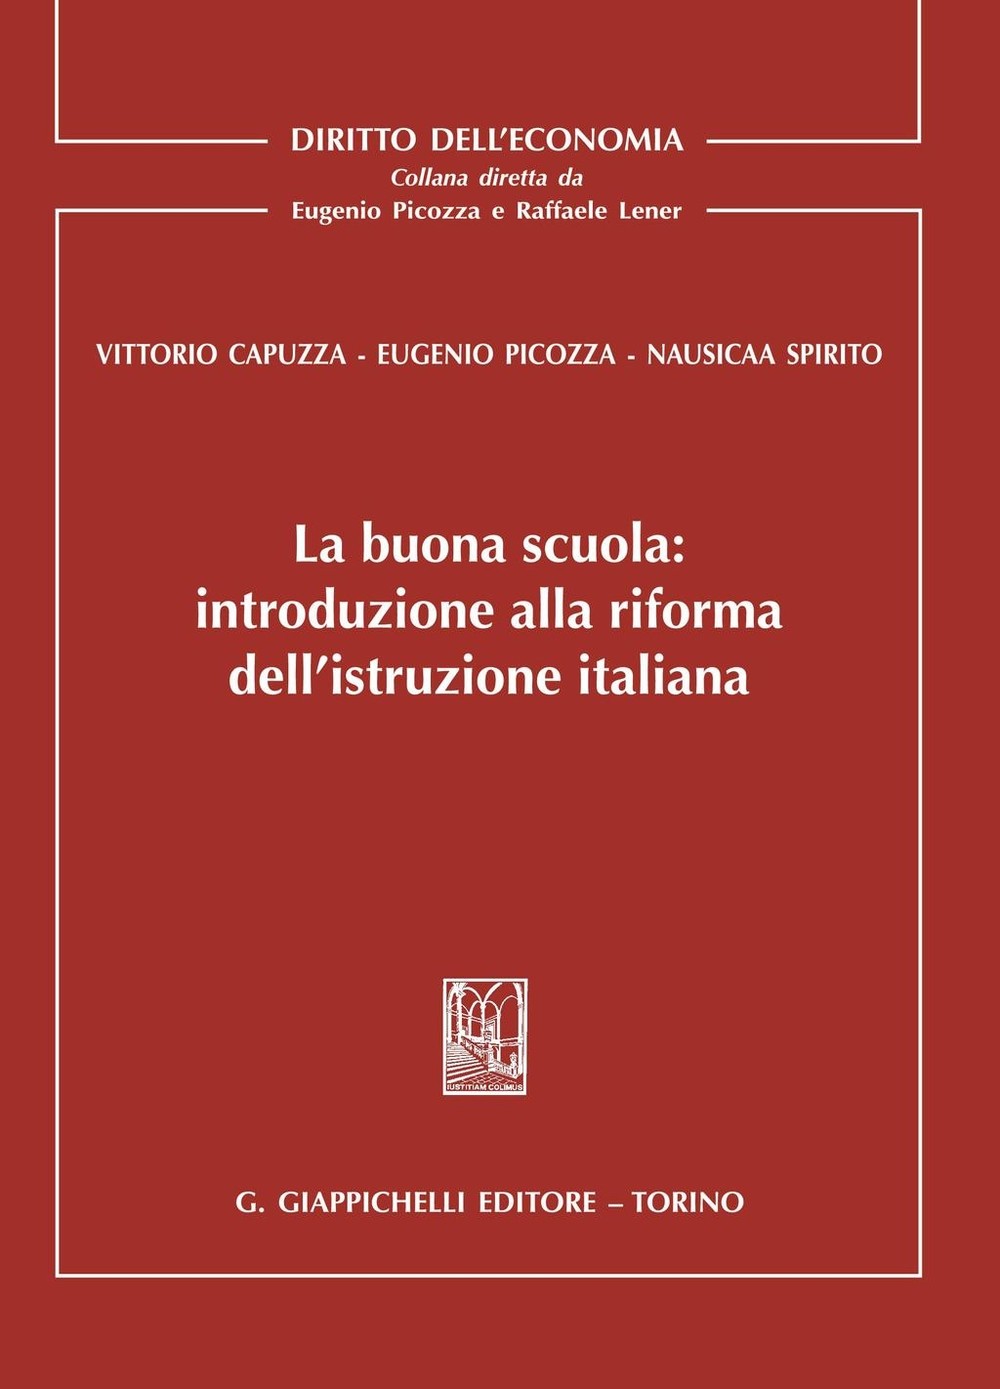 La buona scuola: introduzione alla riforma dell'istruzione italiana - Librerie.coop